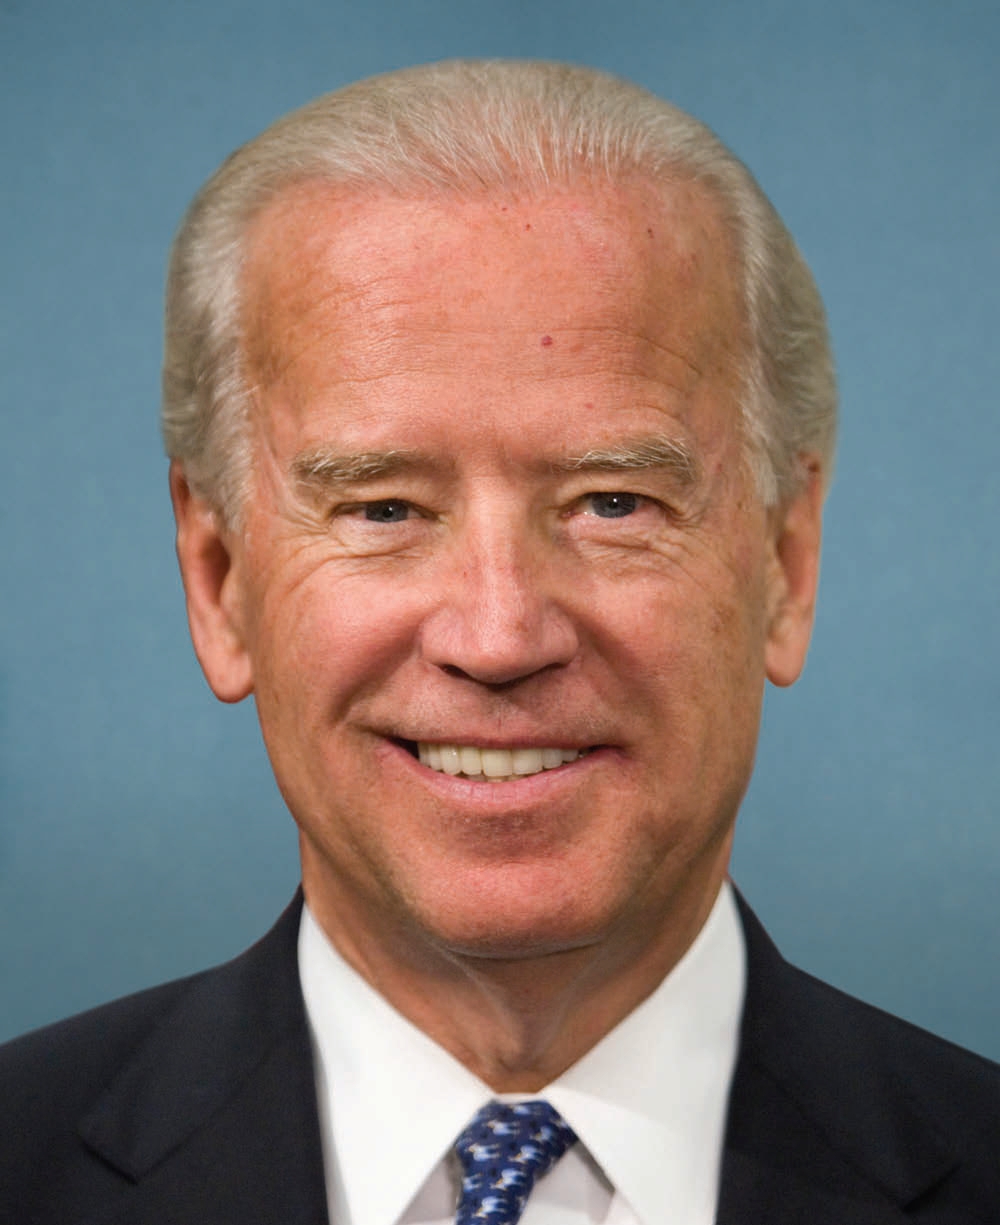 Joe_Biden,_official_photo_portrait,_111th_Congress.jpg